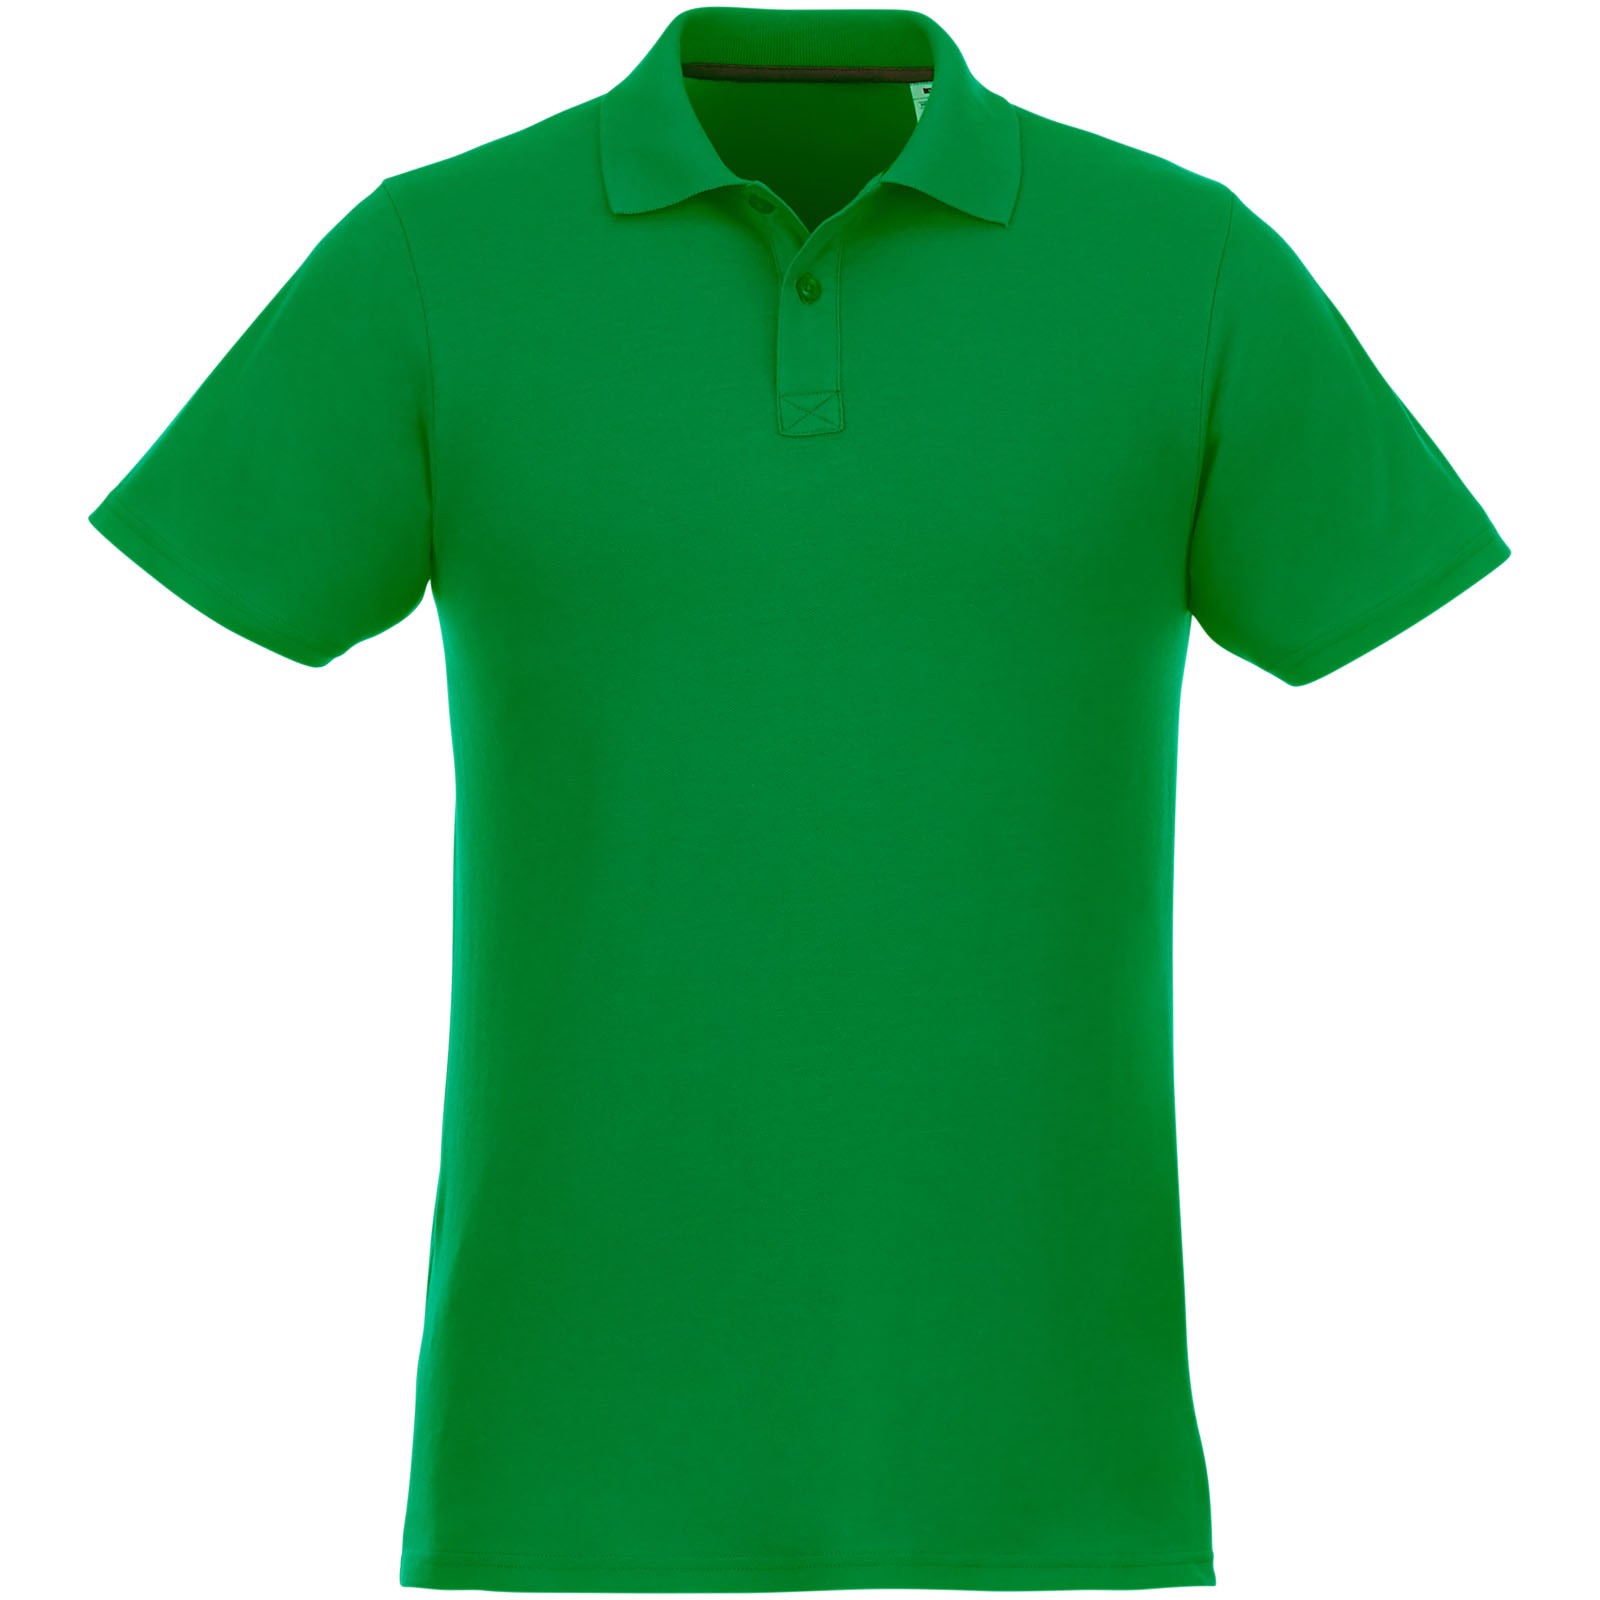 Helios - koszulka męska polo z krótkim rękawem - Zielona paproć / S